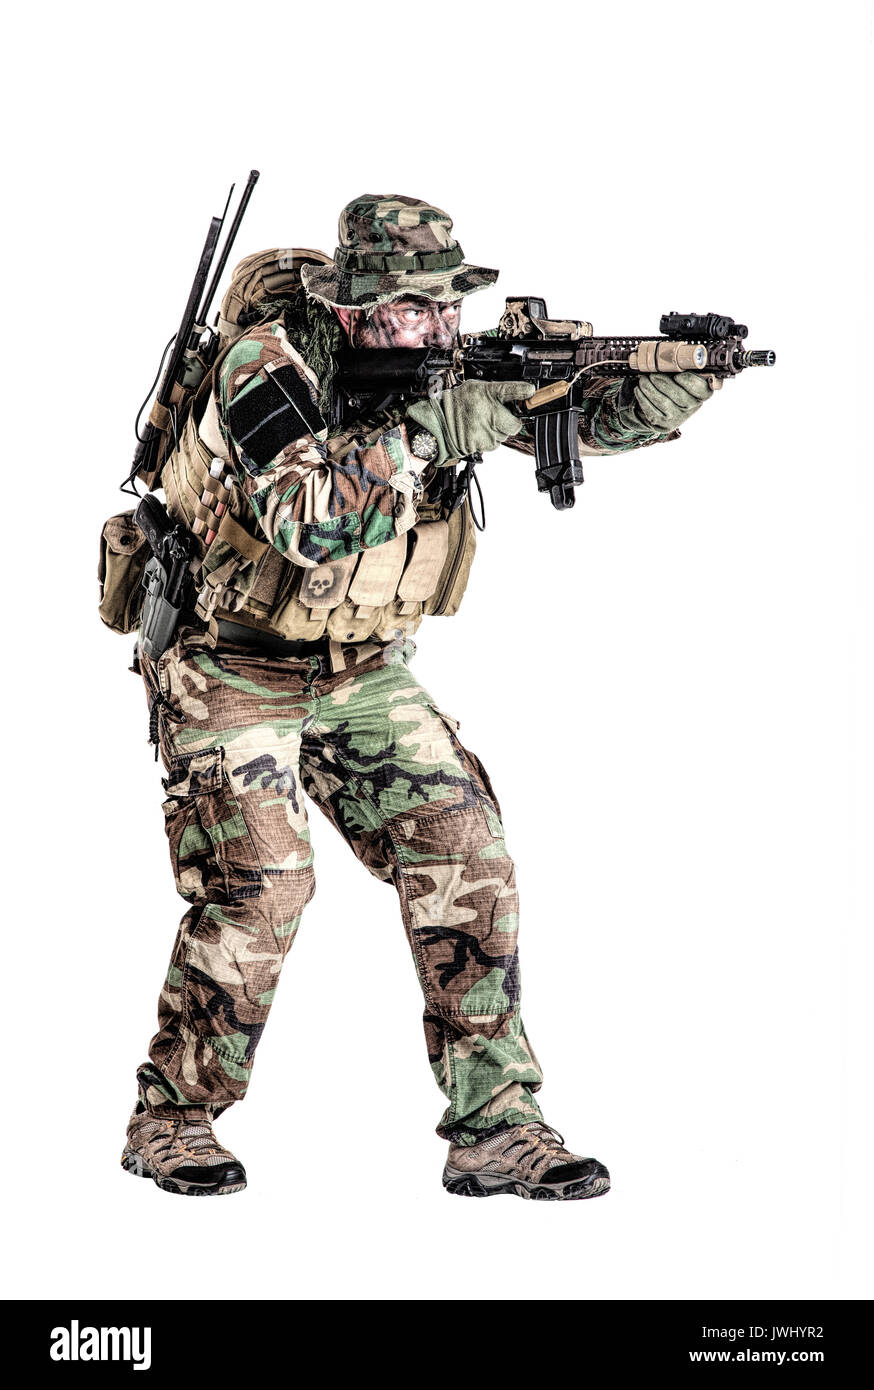 Special forces Usa im Tarnanzug Uniformen Studio gedreht. Halten sie Waffen tragen Jungle Hut, schießen auf der Bewegung, angreifenden Feind. Studio sh Stockfoto